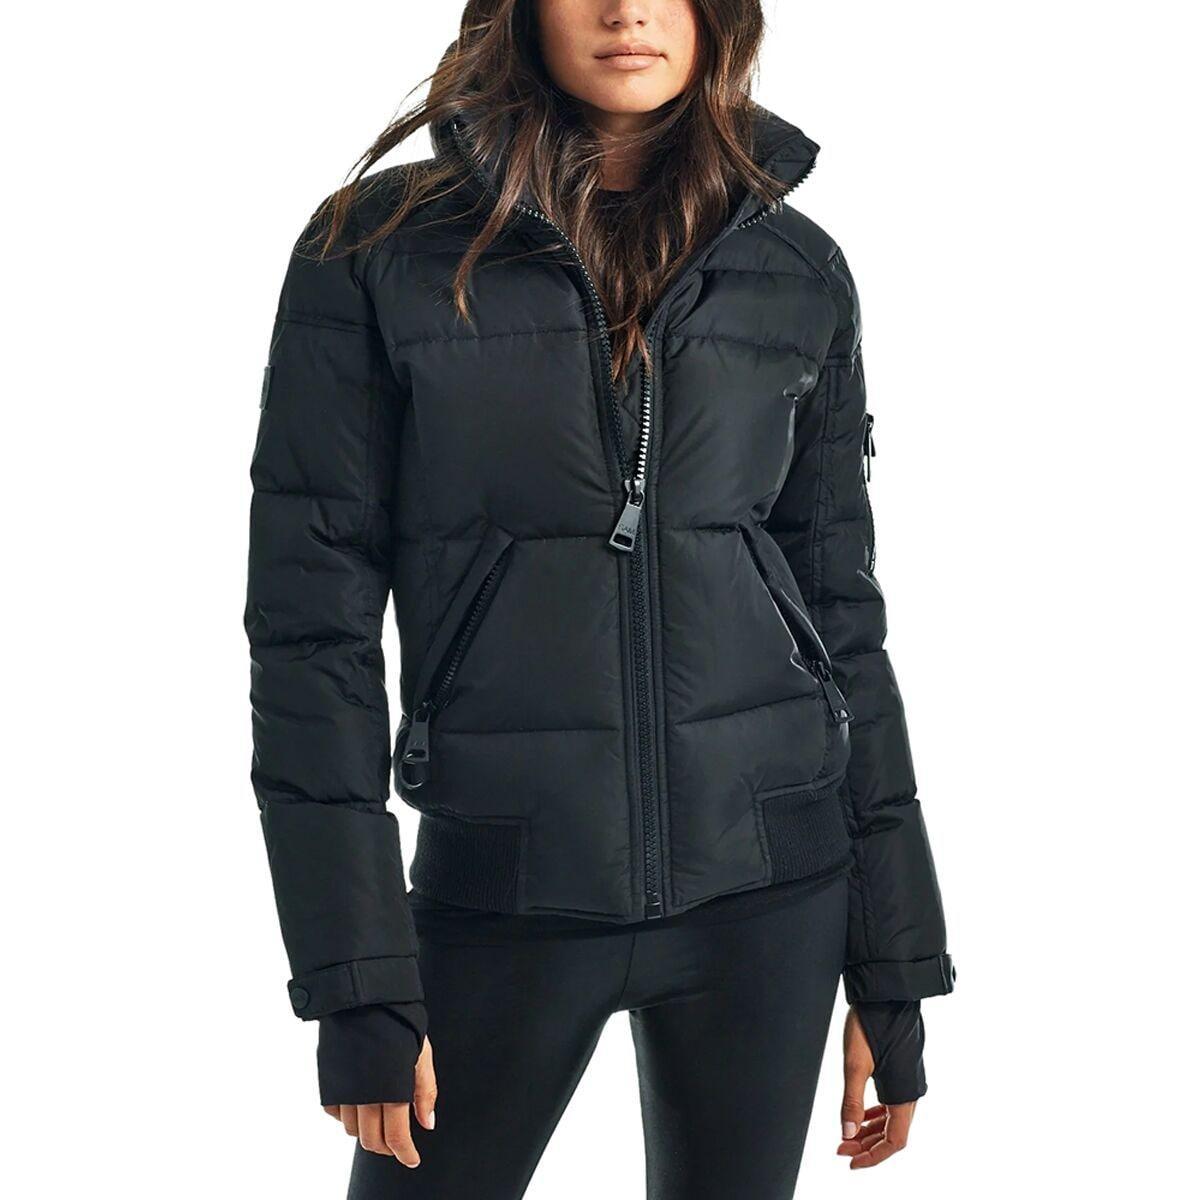 Freestyle Bomber Jacket - Women's Product Image